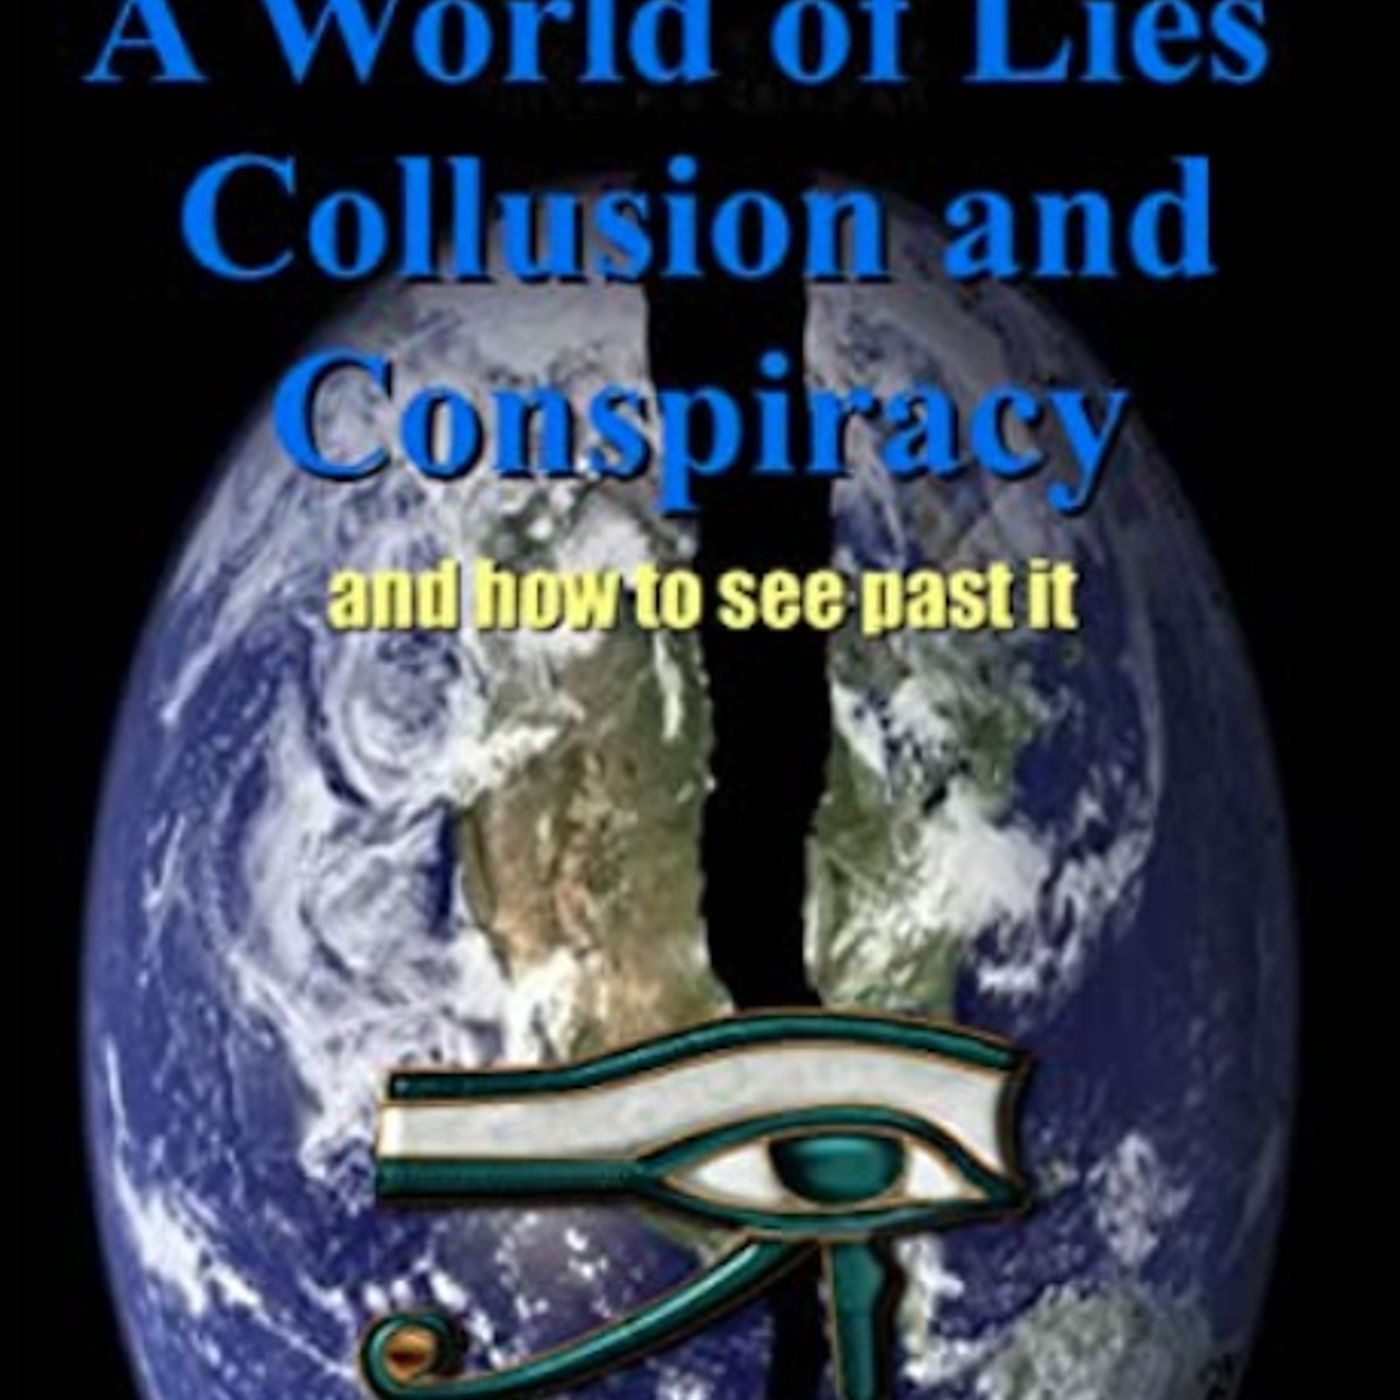 GVP #215 - Michael Ogden - A World of Lies